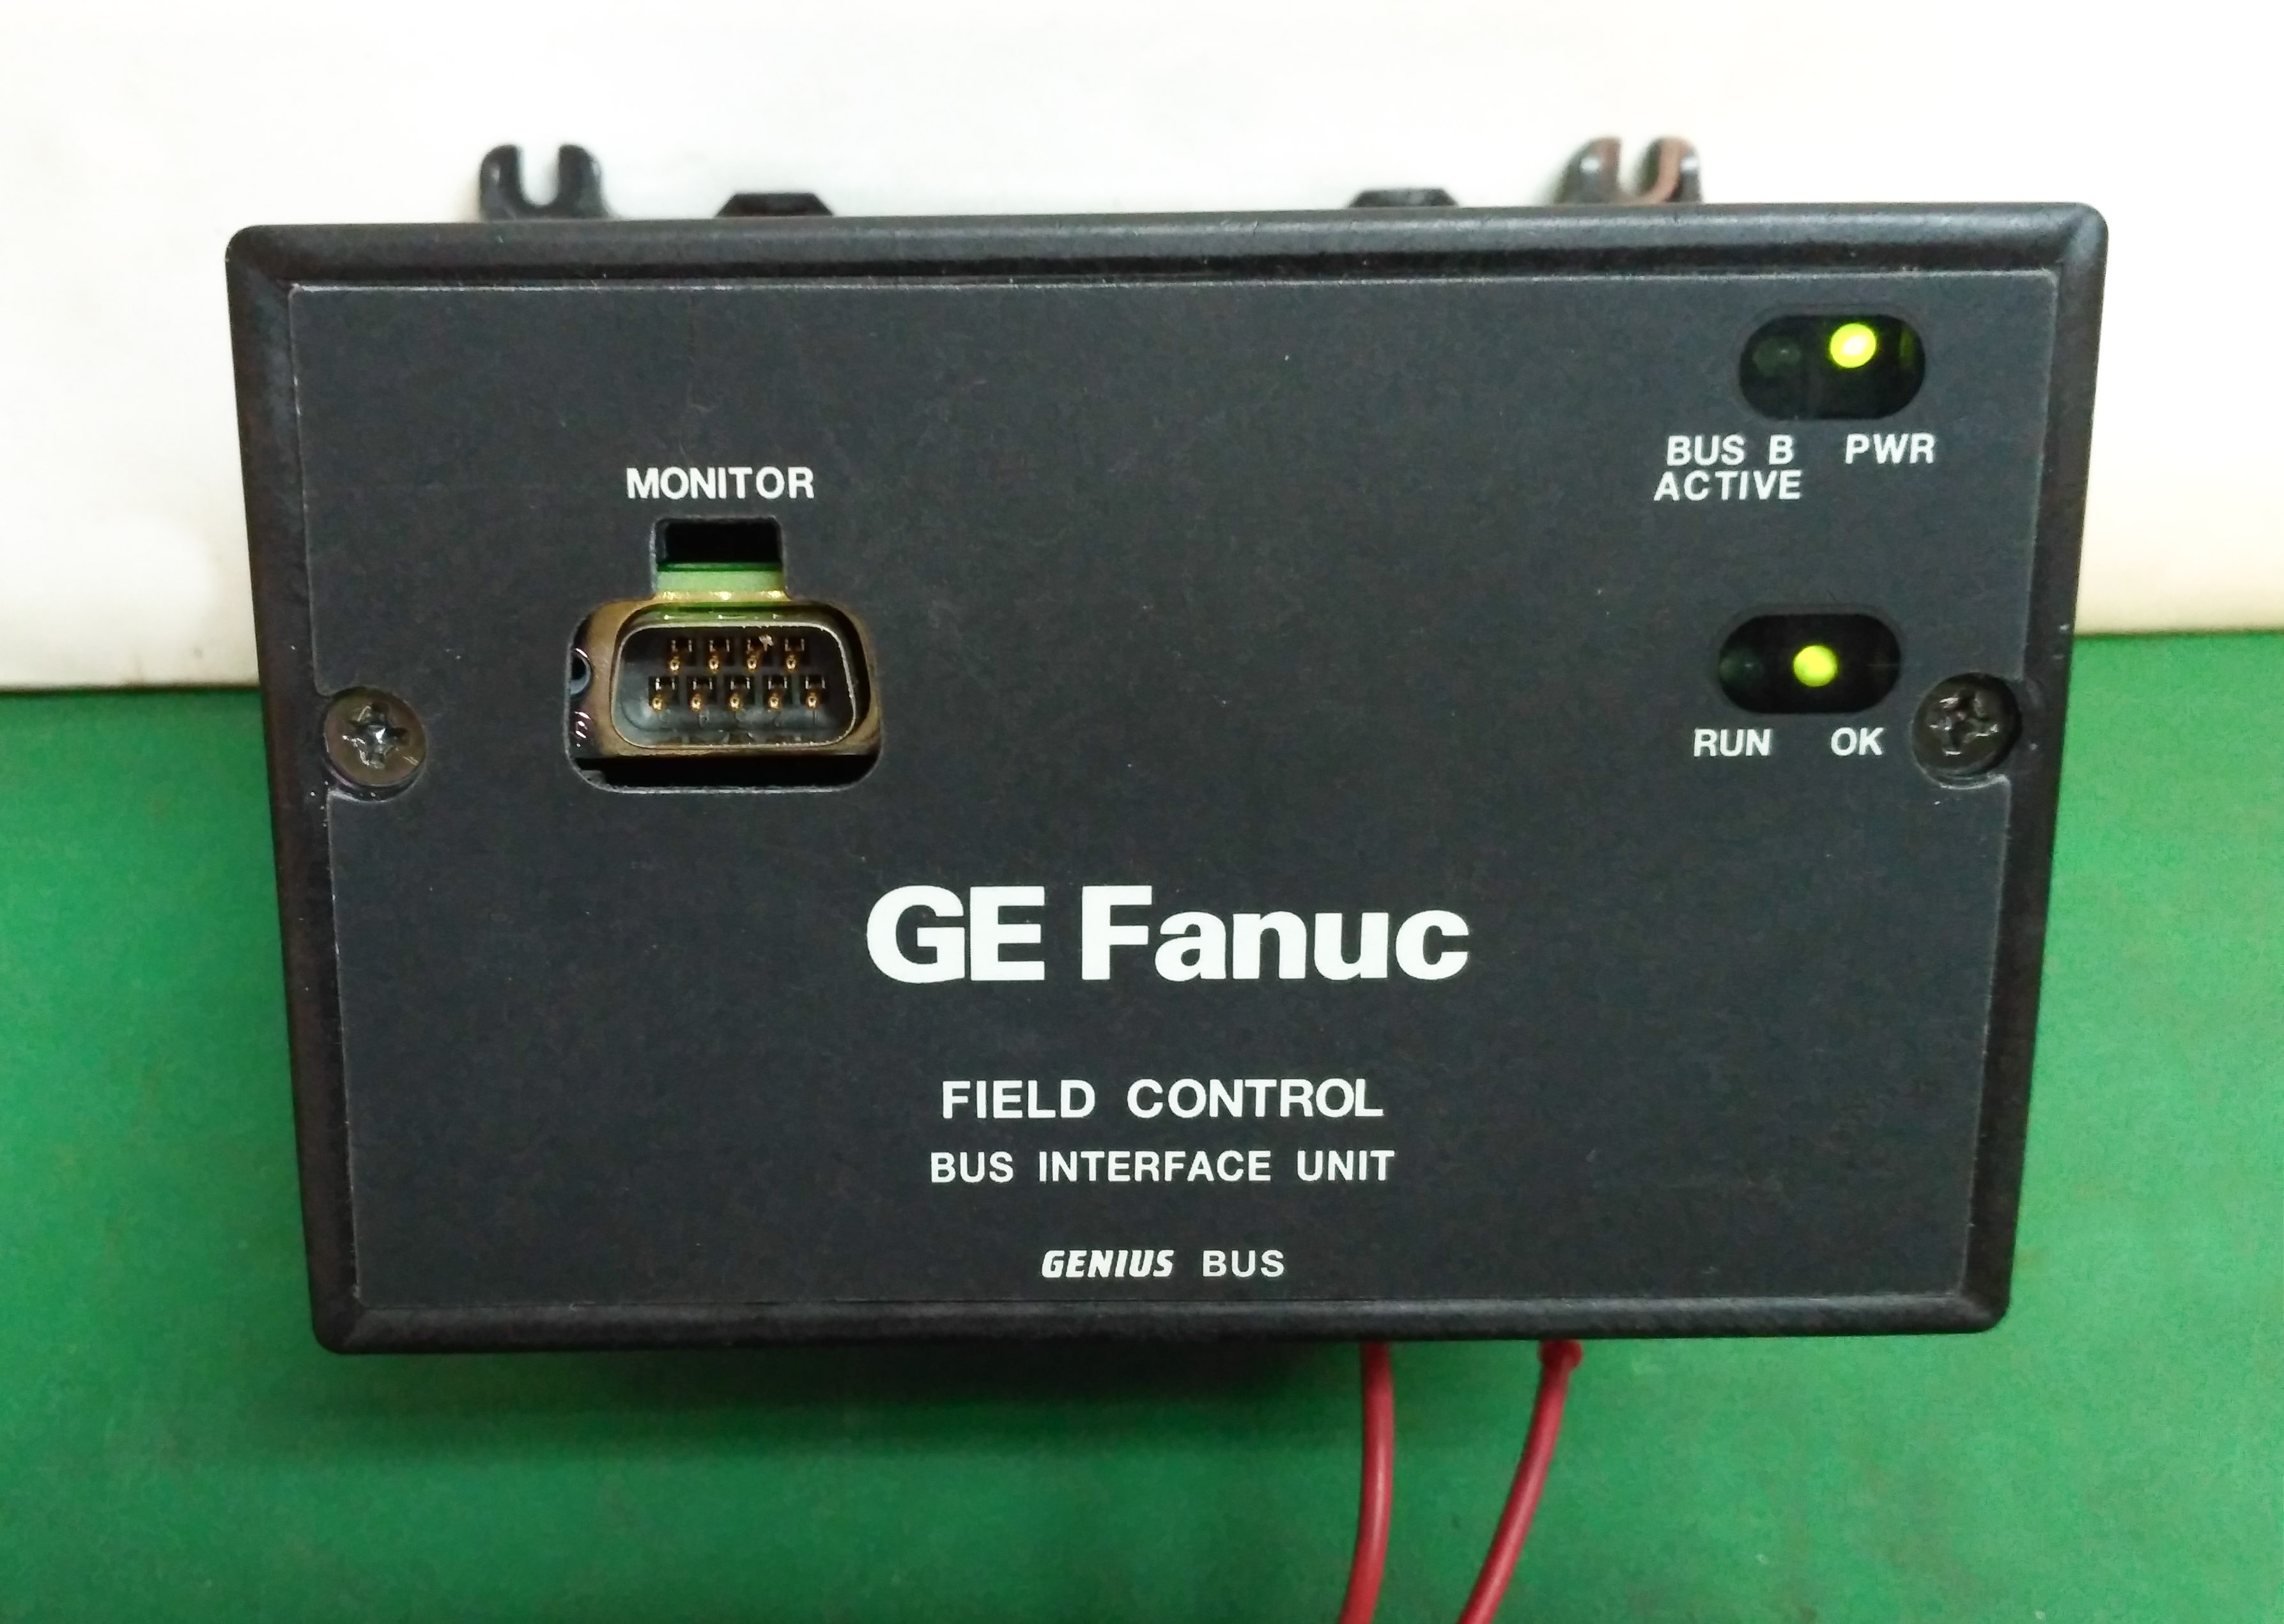 Field controls. Модуль Genius Bus interface Unit ge, ic200gbi001. Интерфейсный модуль em-236 interface Unit. Блок голосового управления для автобуса. Fanuc кнопки для MDI Unit мембрана.